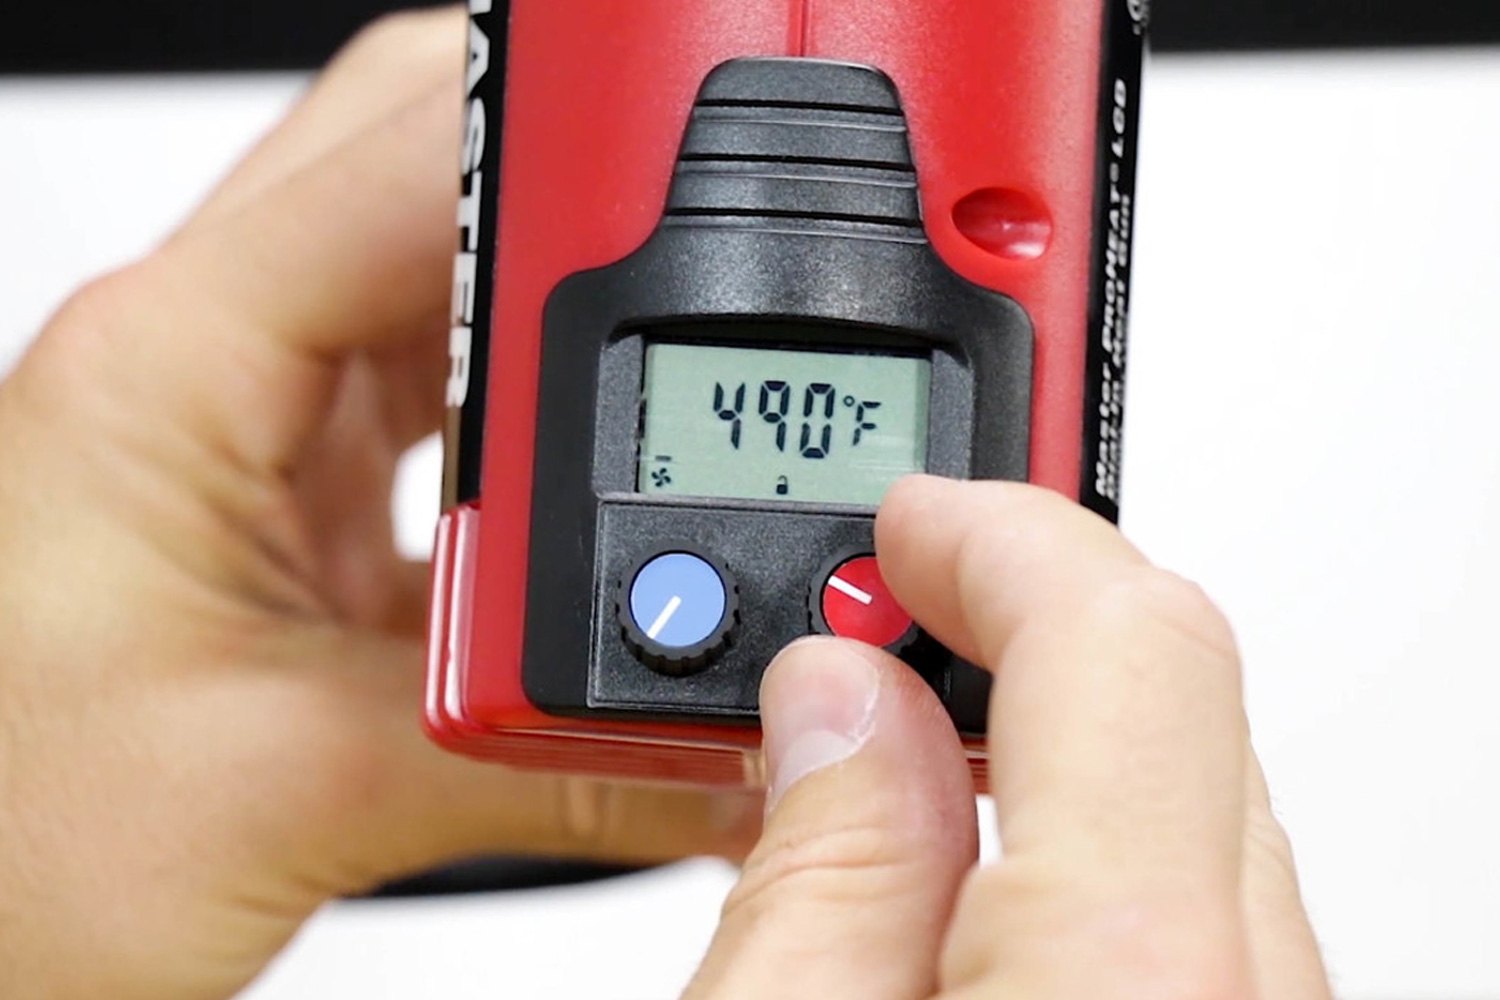 Proheat 1400A LCD Digital Professional Heat Gun & Kit